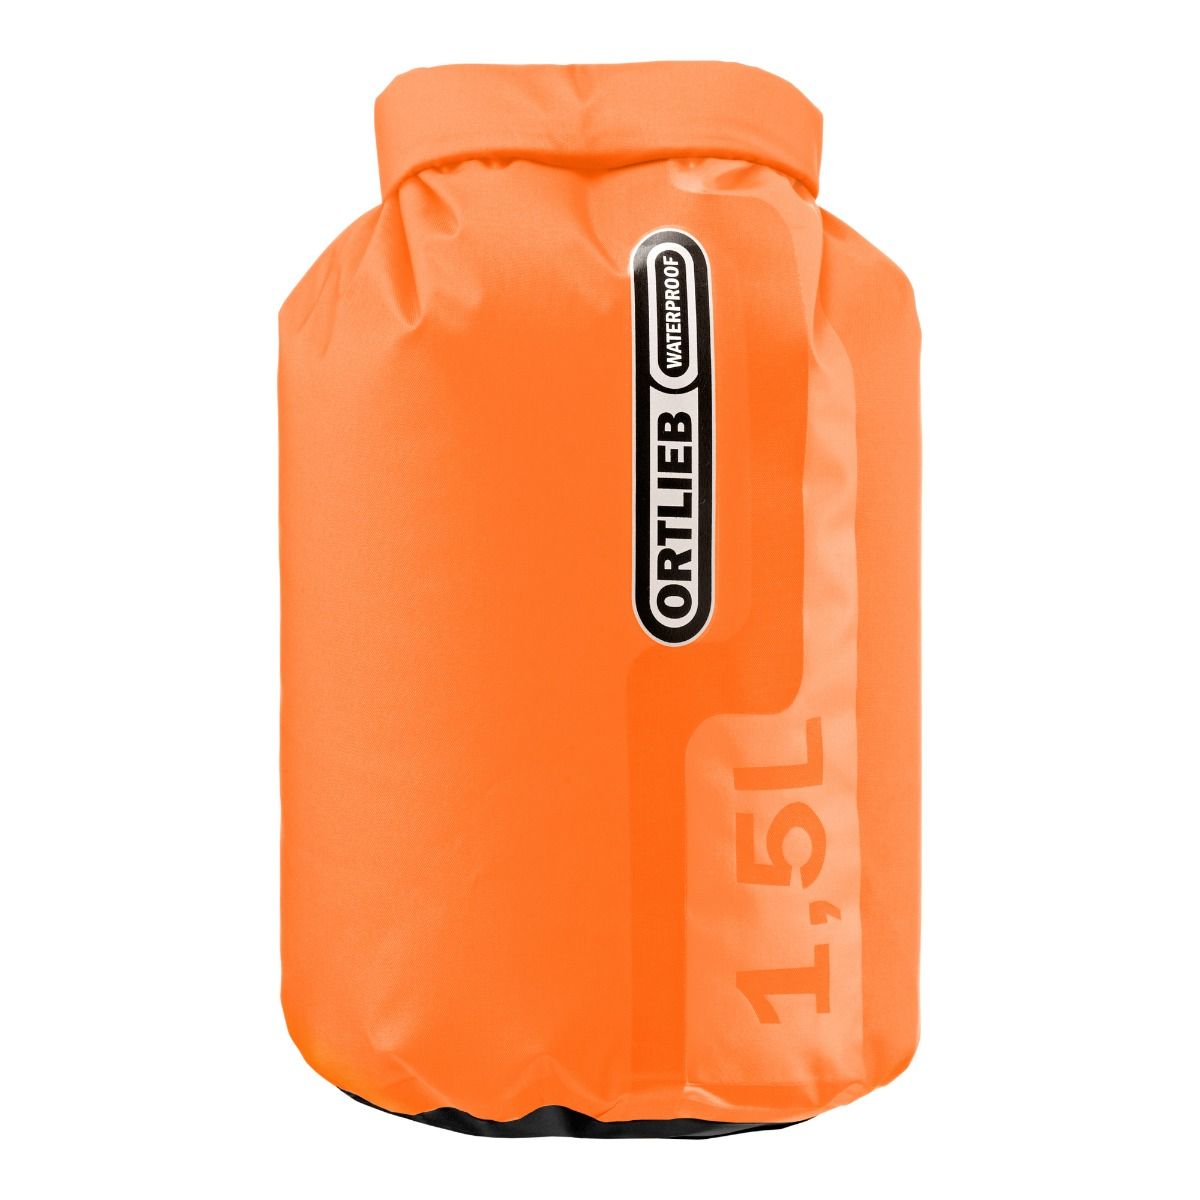 Produktbild von ORTLIEB Dry-Bag PS10 - 1,5L Packsack - orange